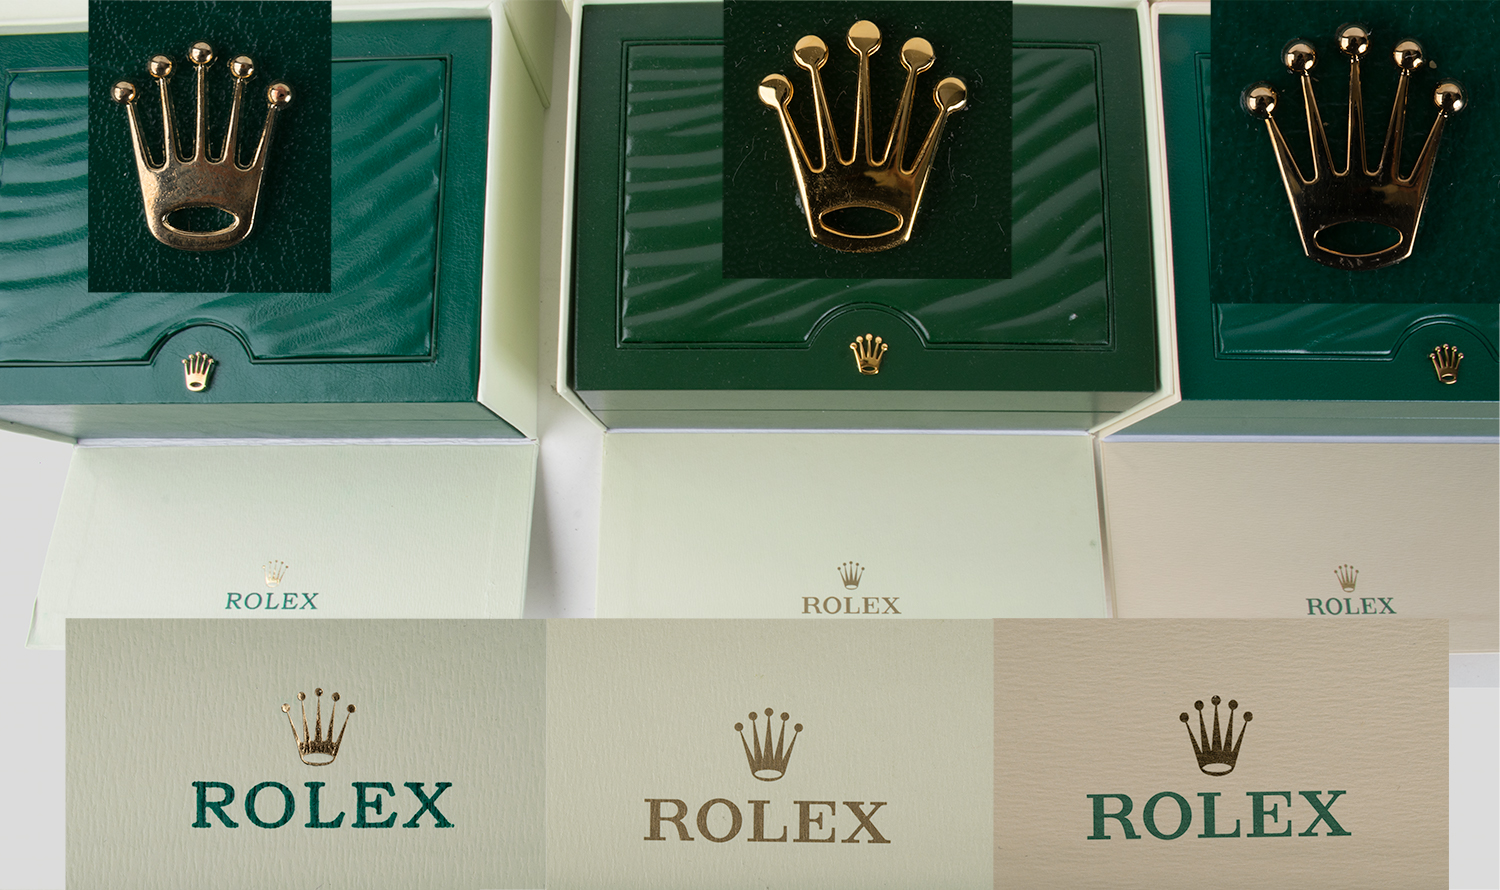 Rolex Original Box Vs Fake